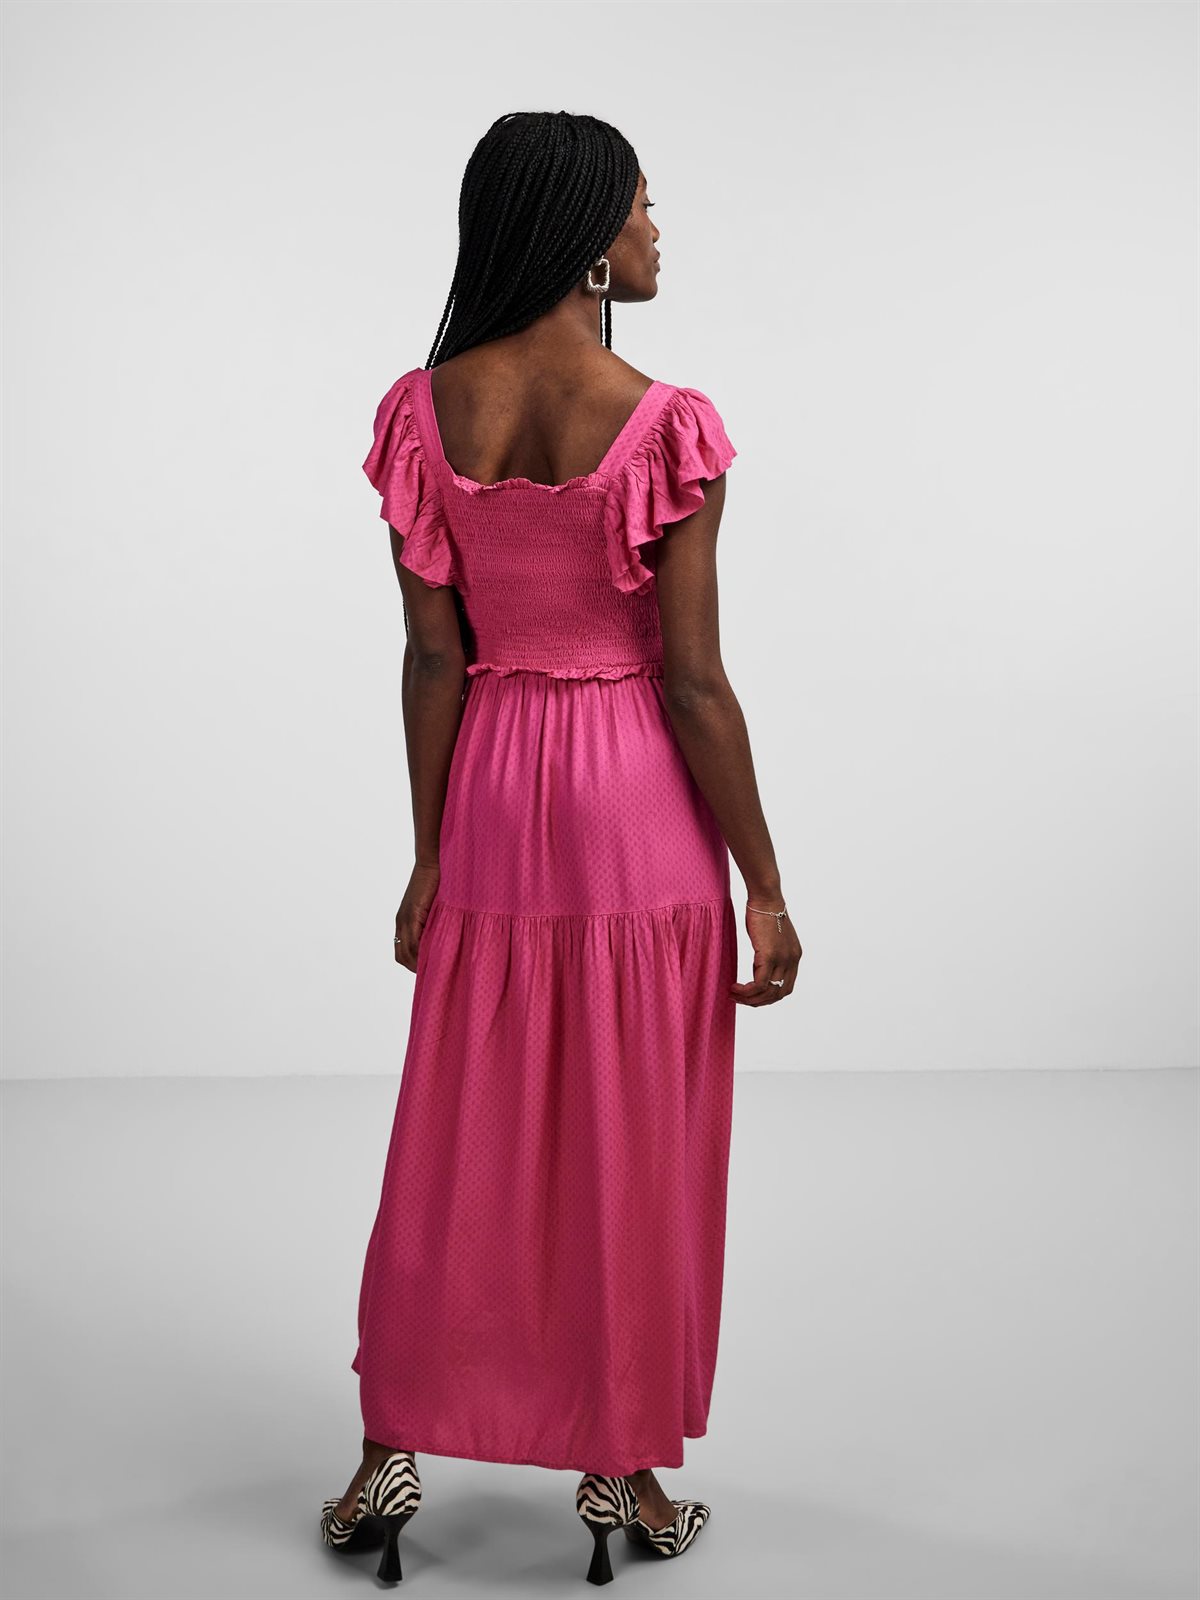 Y.A.S - Citri - Long Fuchsia Sl Dress